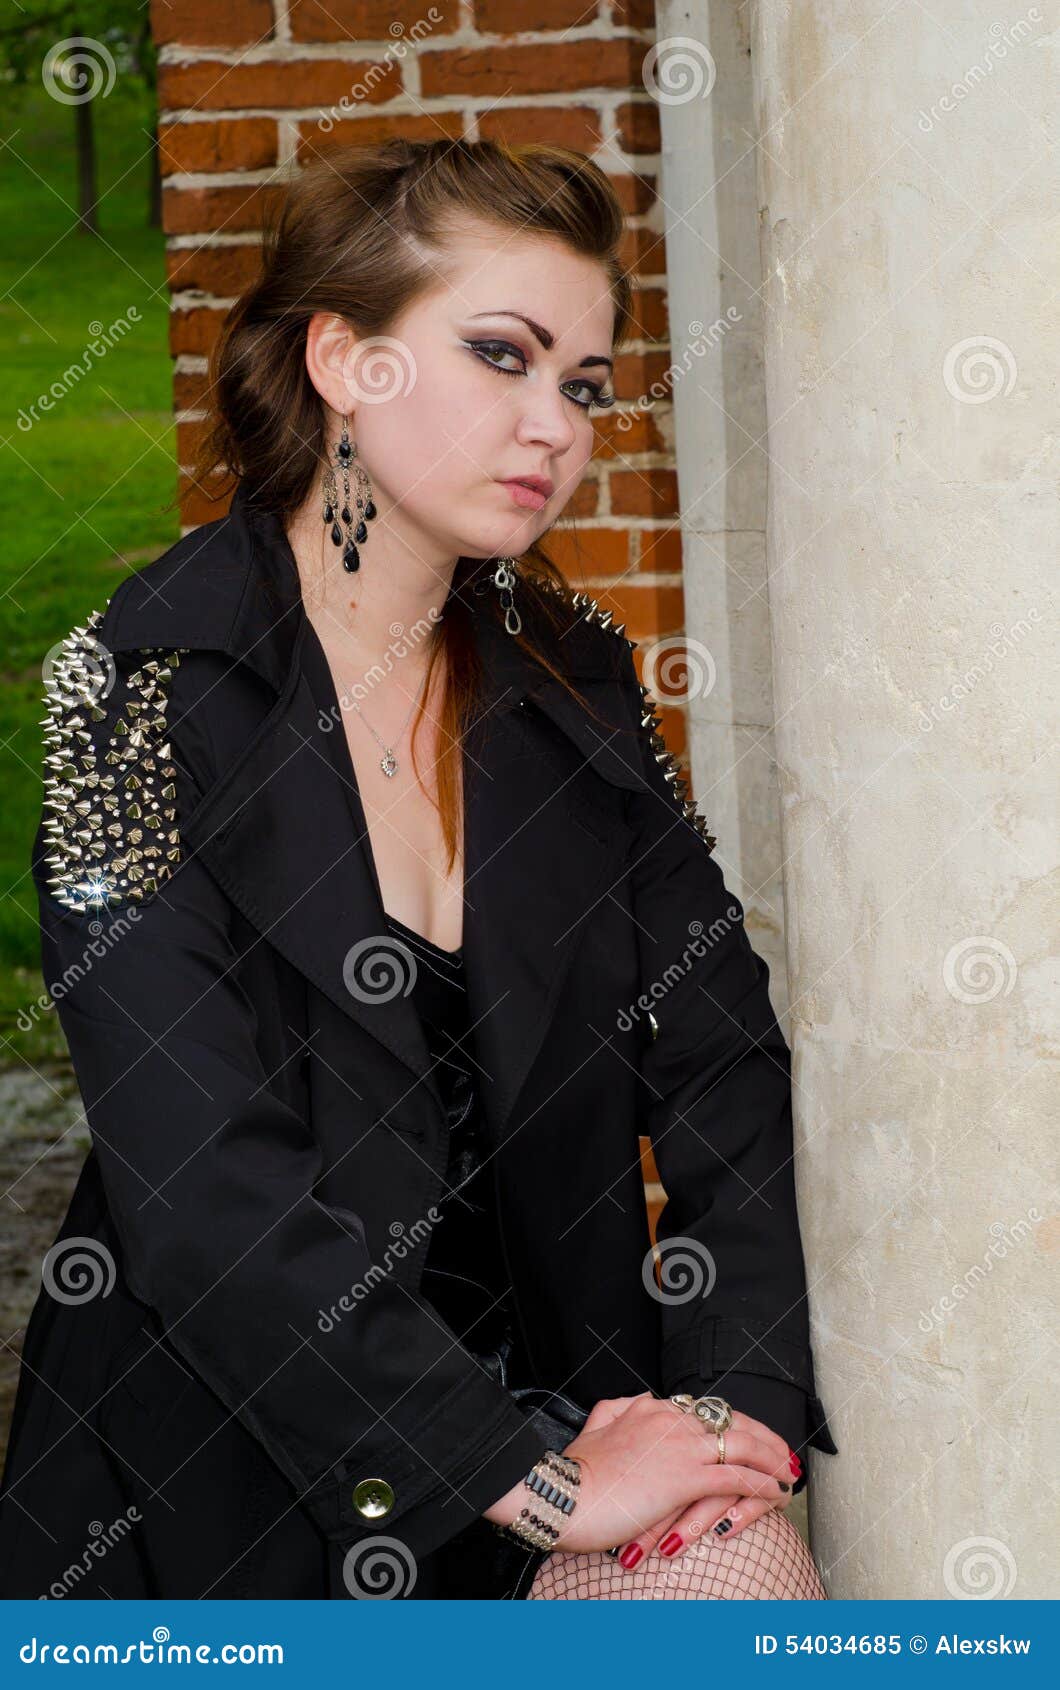 The girl at a brick wall stock image. Image of dress - 54034685